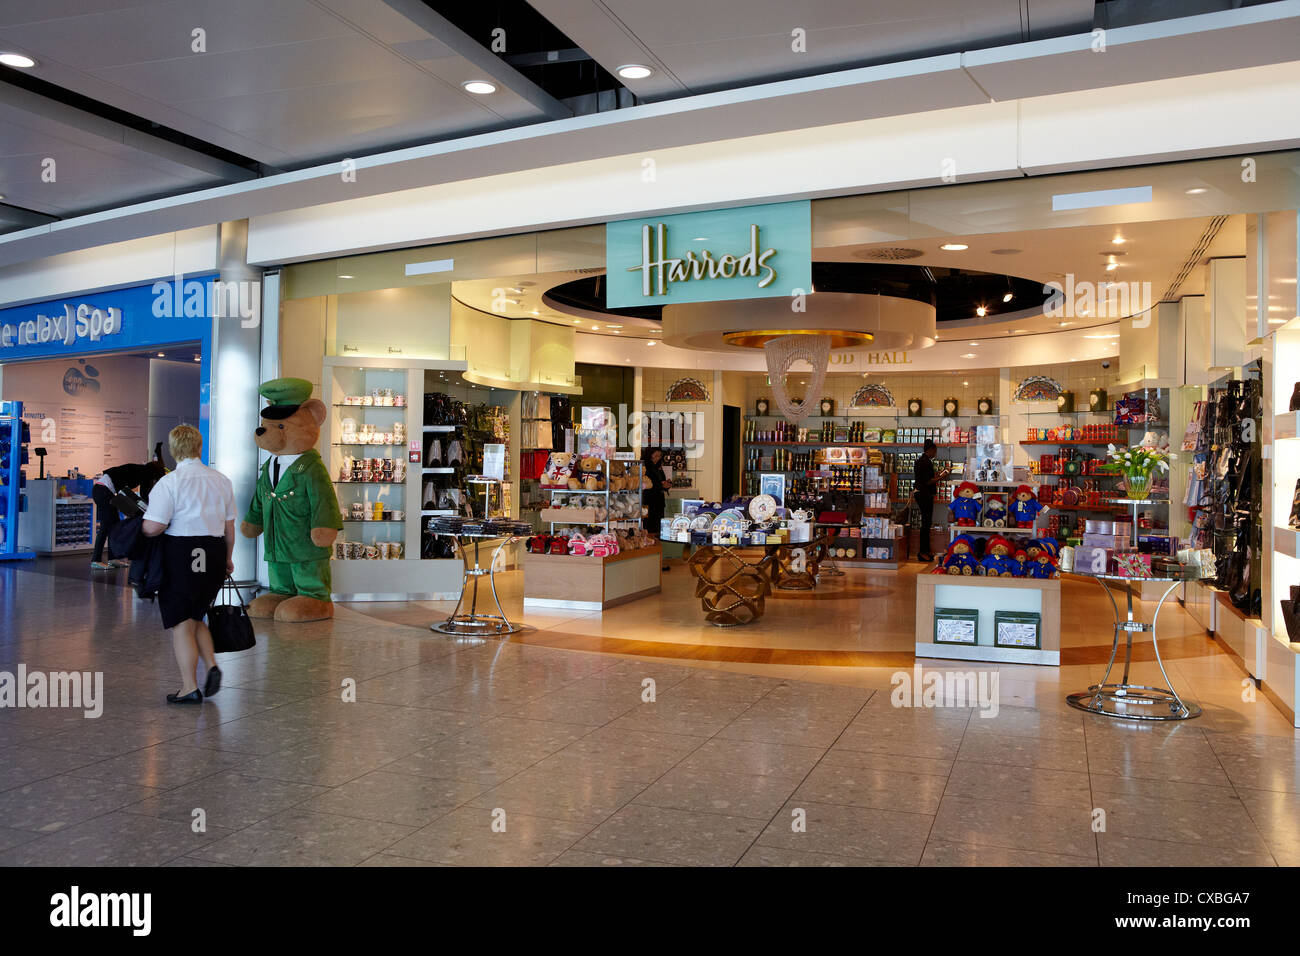 Aeroporto di Heathrow negozi, Terminale, REGNO UNITO Foto Stock